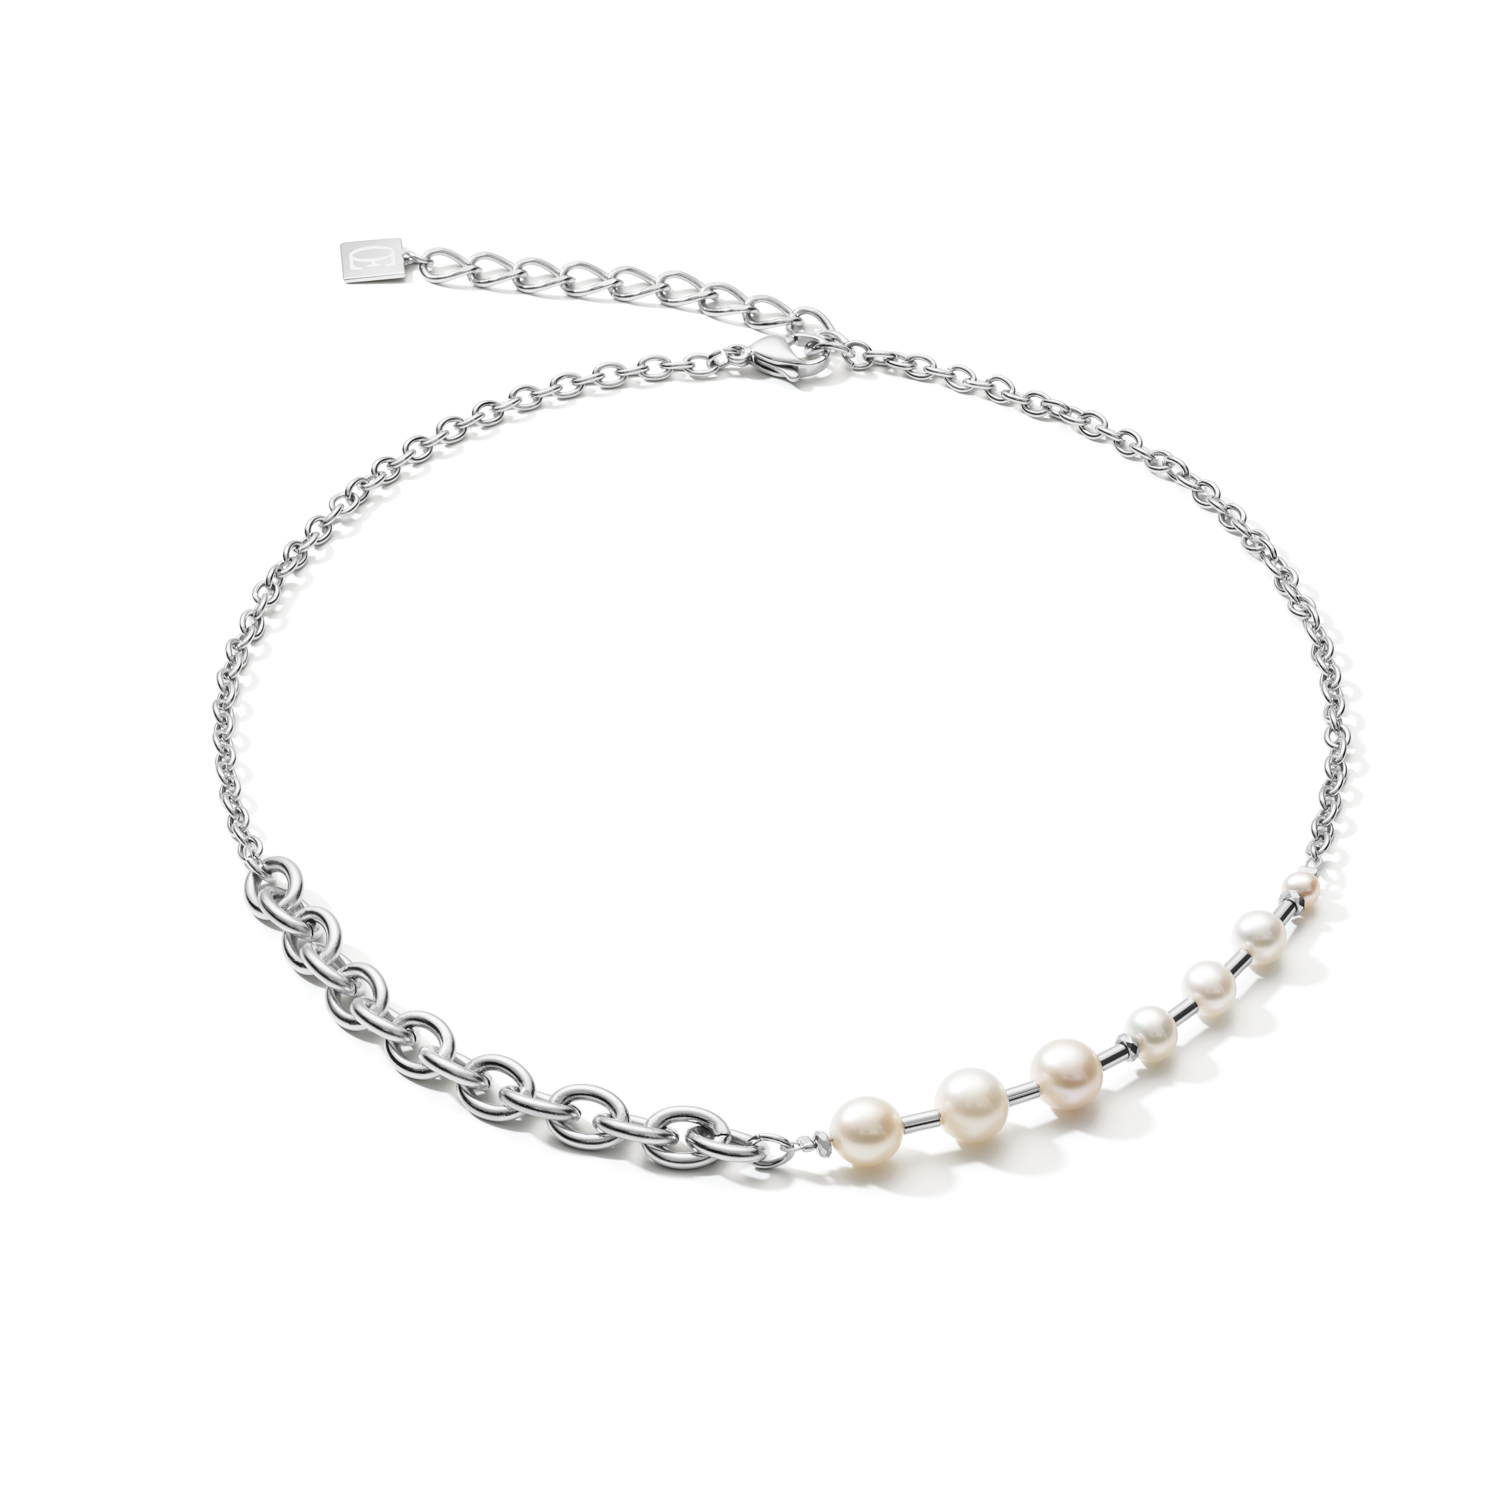 Collana classica & moderna perle d'acqua dolce e catena in acciaio inossidabile bianco-argento